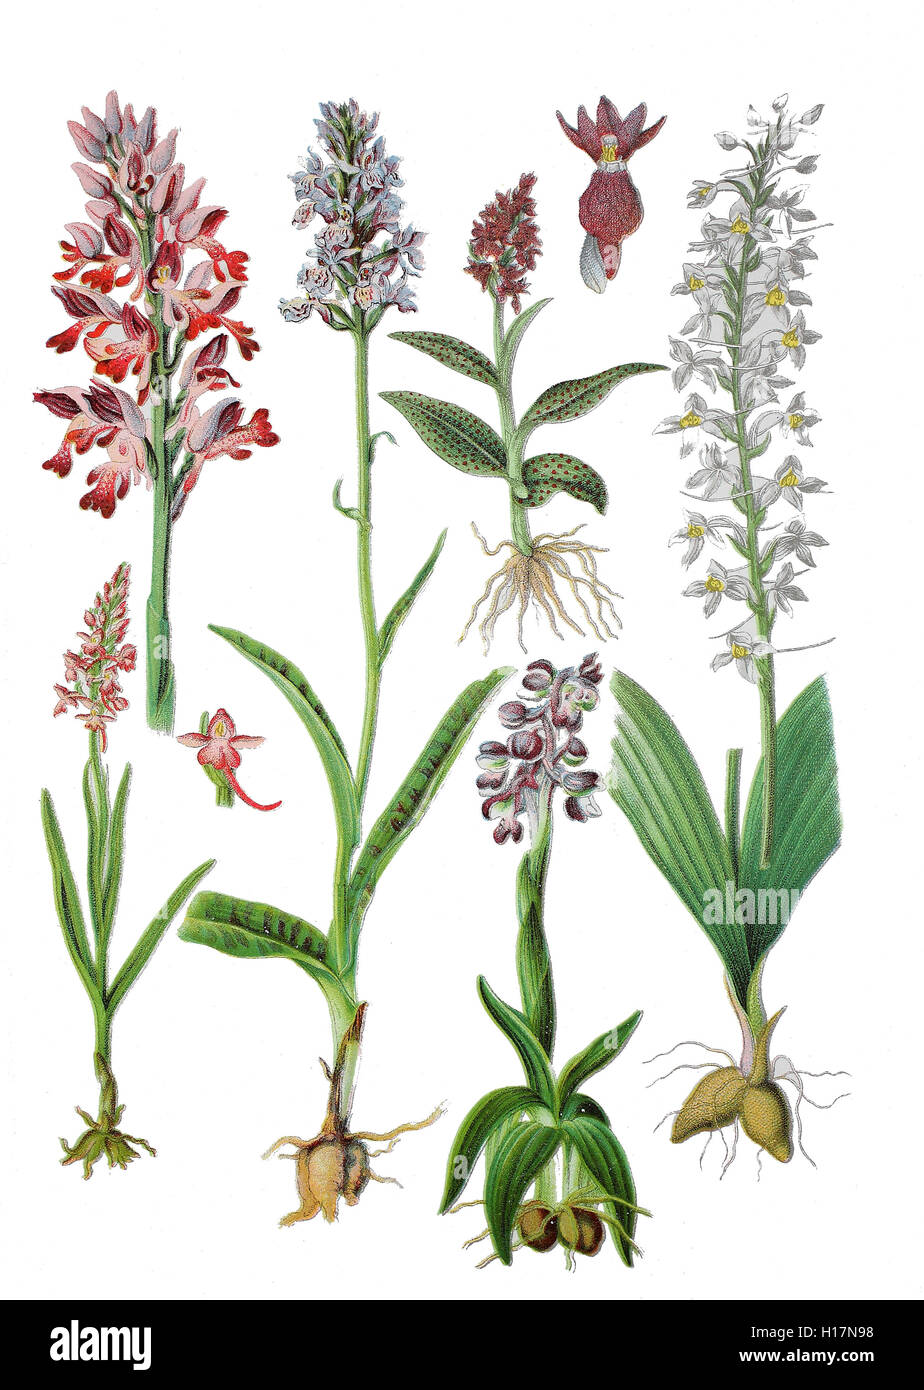 Helm-Knabenkraut, Orchis militaris (oben links), Breitblaettriges Knabenkraut oder Breitblaettriger Fingerwurz, Dactylorhiza majalis (oben, 2. von rechts), Kleines Knabenkraut, Salep-Knabenkraut oder Narrenkappe, Orchis morio (unten, Geflecktes Knabenkraut oder Flecken-Fingerwurz, Dactylorhiza maculata (unten, 2, von links), Muecken-Haendelwurz, Langsporn-Haendelwurz, Fliegen-Haendelwurz oder Grosse Haendelwurz, Gymnadenia conopsea, (links unten), Zweiblaettrige Waldhyazinthe, Weiss-Waldhyazinthe oder Weisse Waldhyazinthe, Platanthera bifolia (unten rechts) Foto Stock